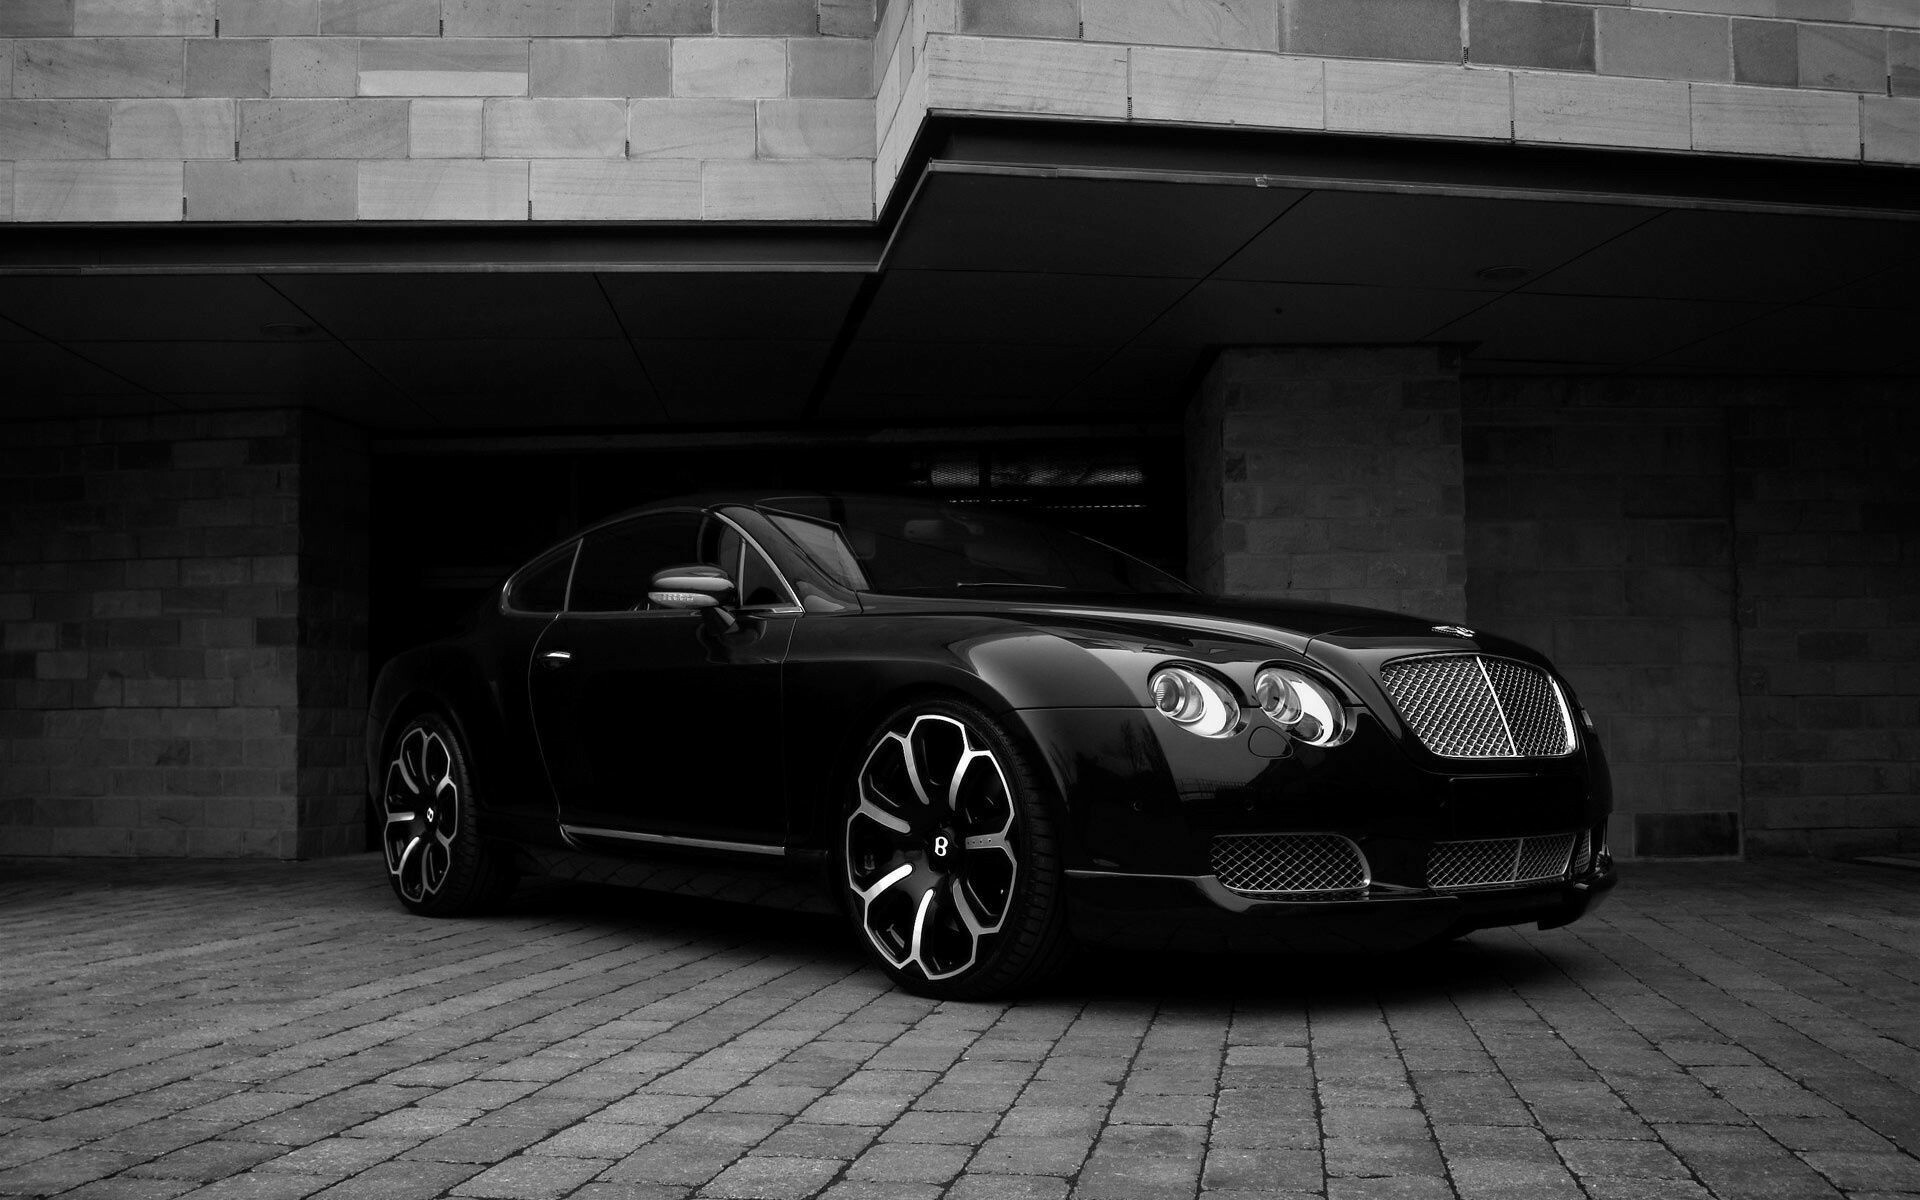 Undefined Bentley wallpaper, Adorable backgrounds, Black Bentley beauty, Timeless luxury, 1920x1200 HD Desktop